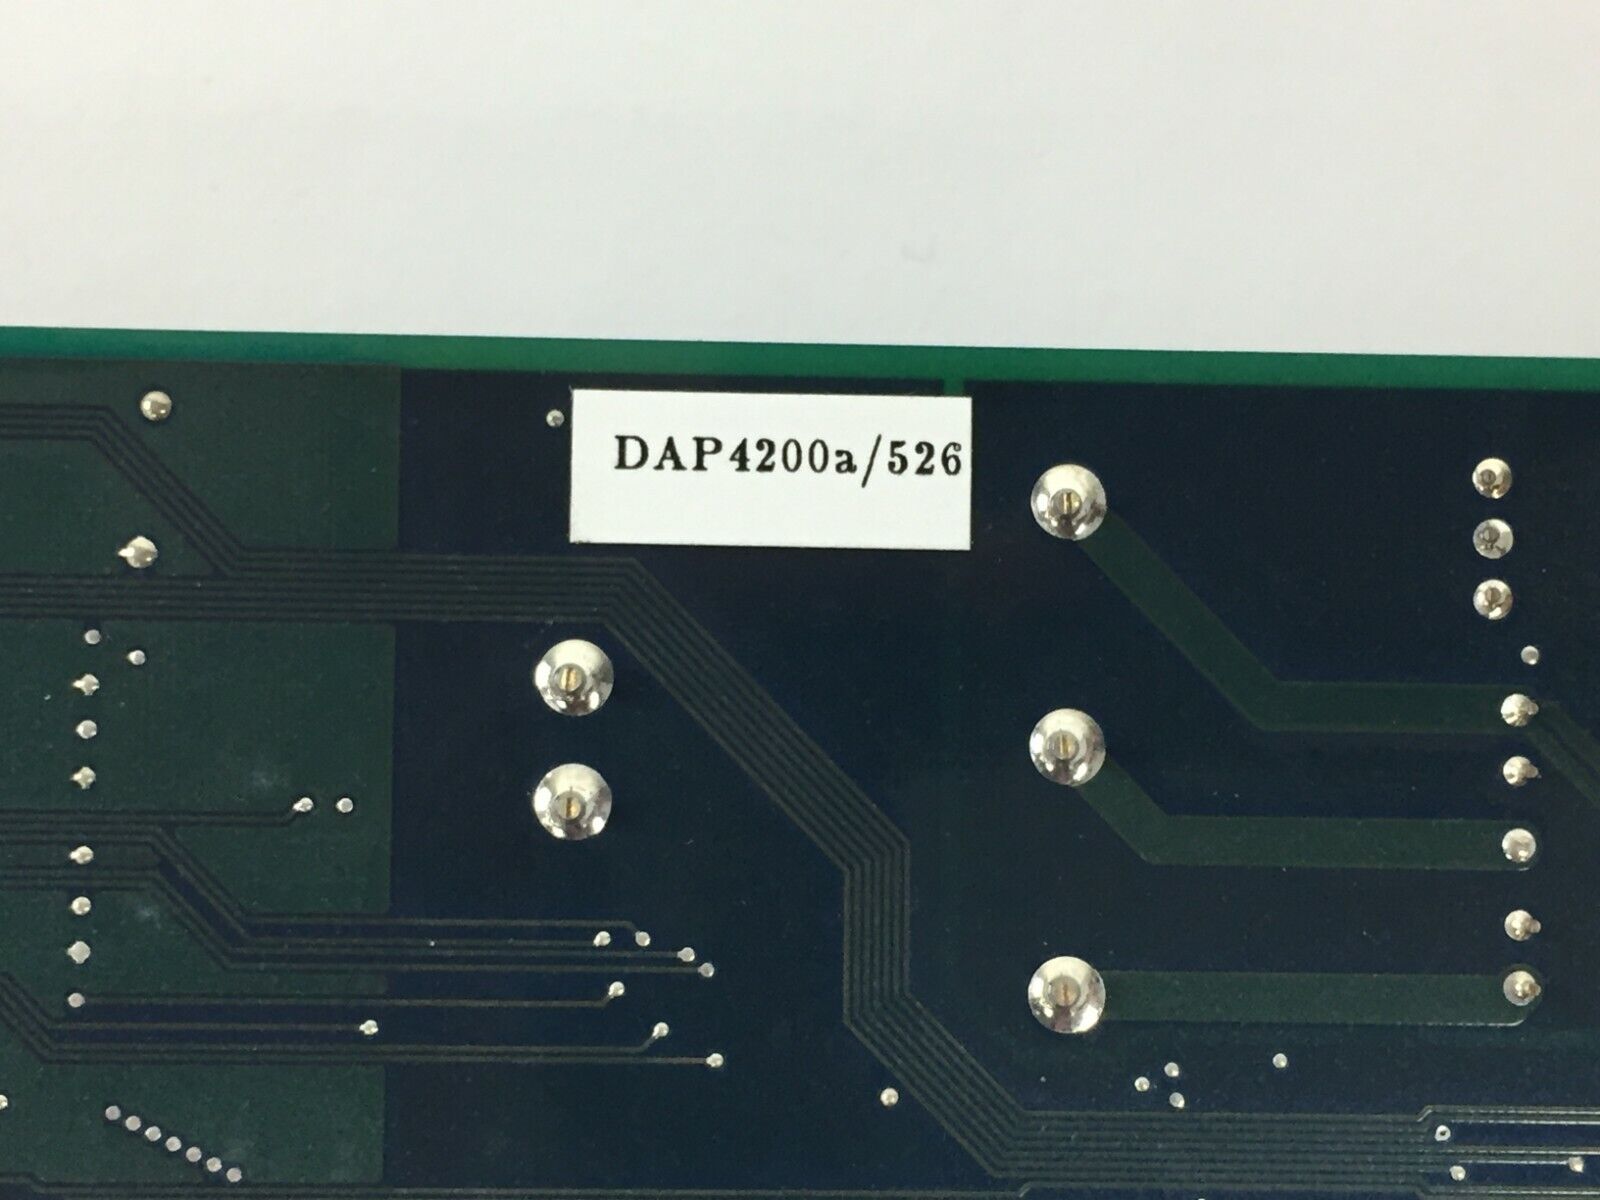 Microstar Laboratories DAP 4200a/526 Data Acquistion Board